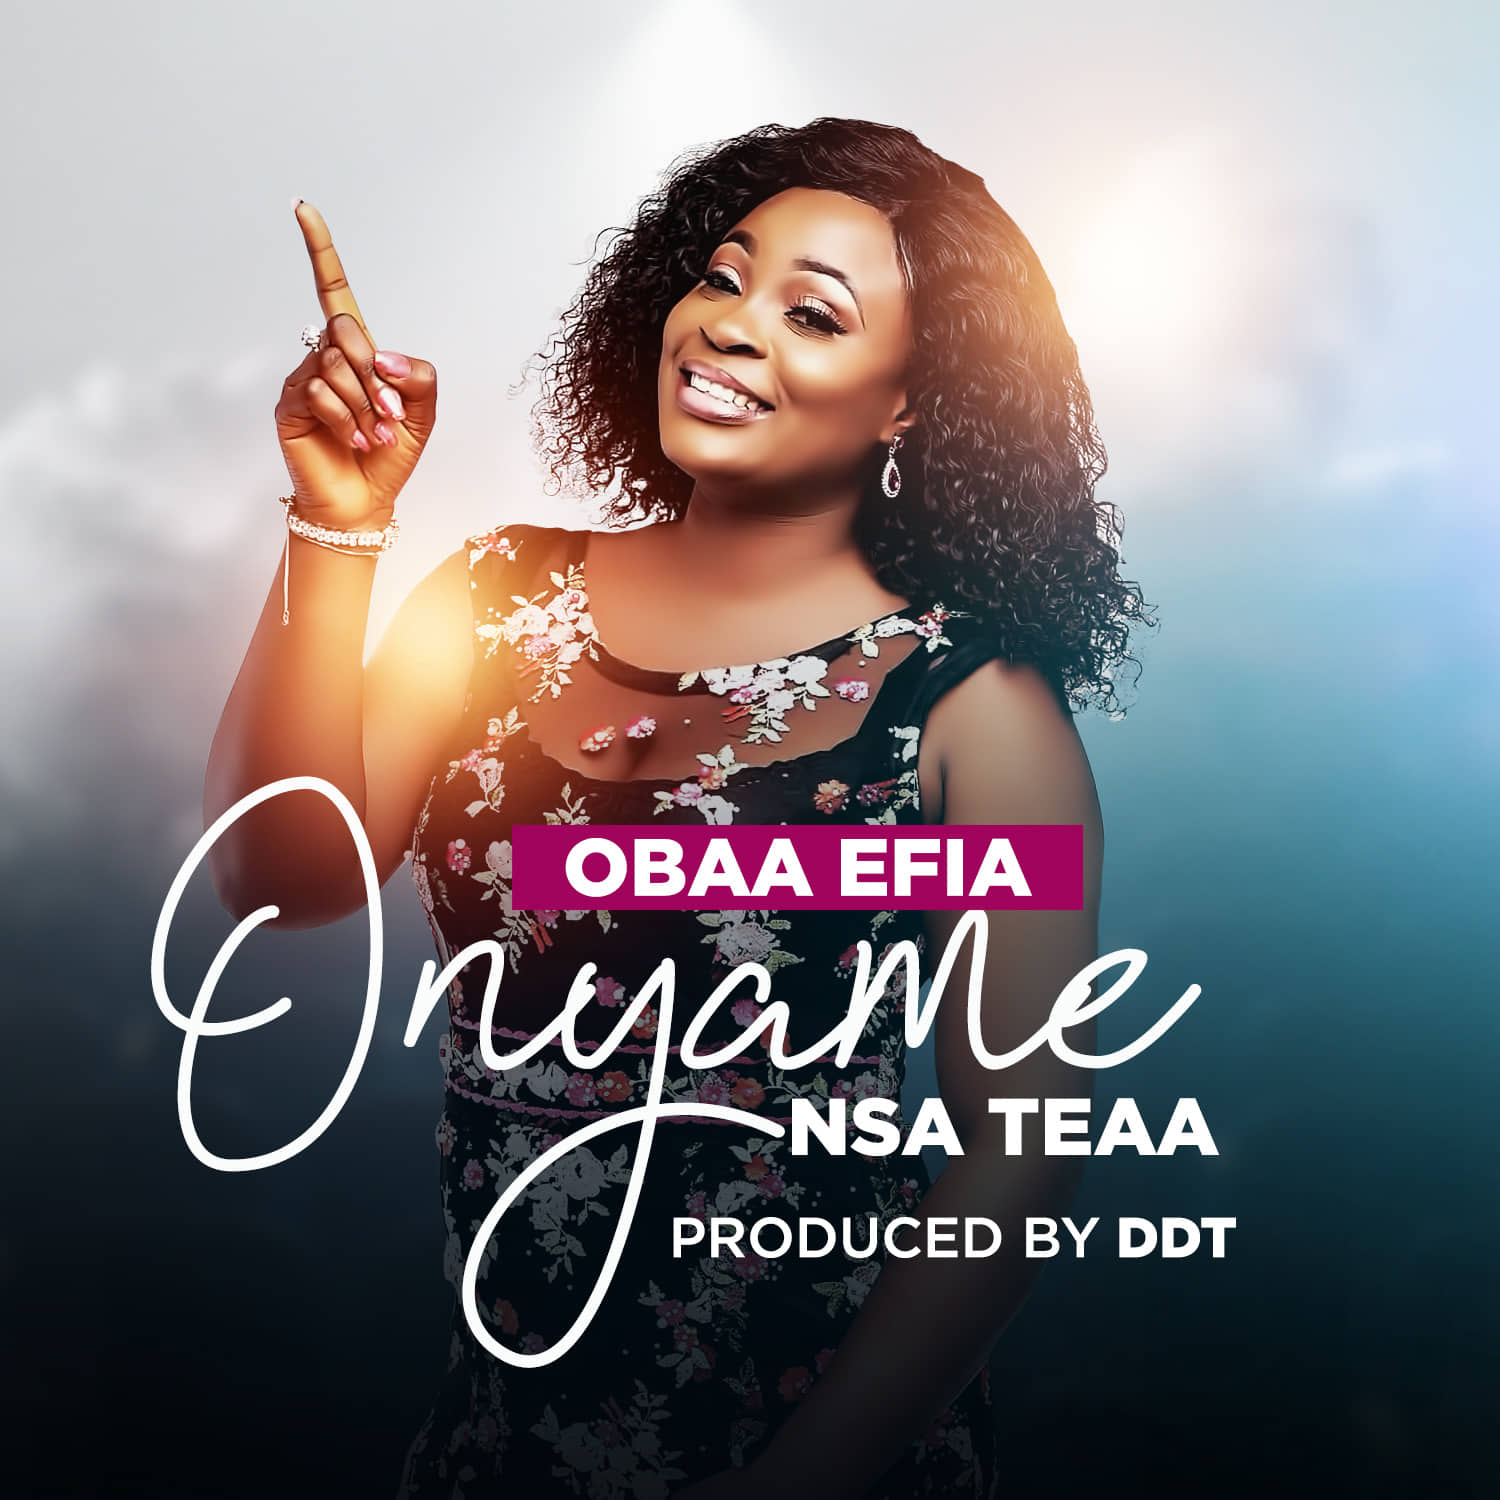 Obaa Efia - Onyame Nsa tia (Prod by DDT)